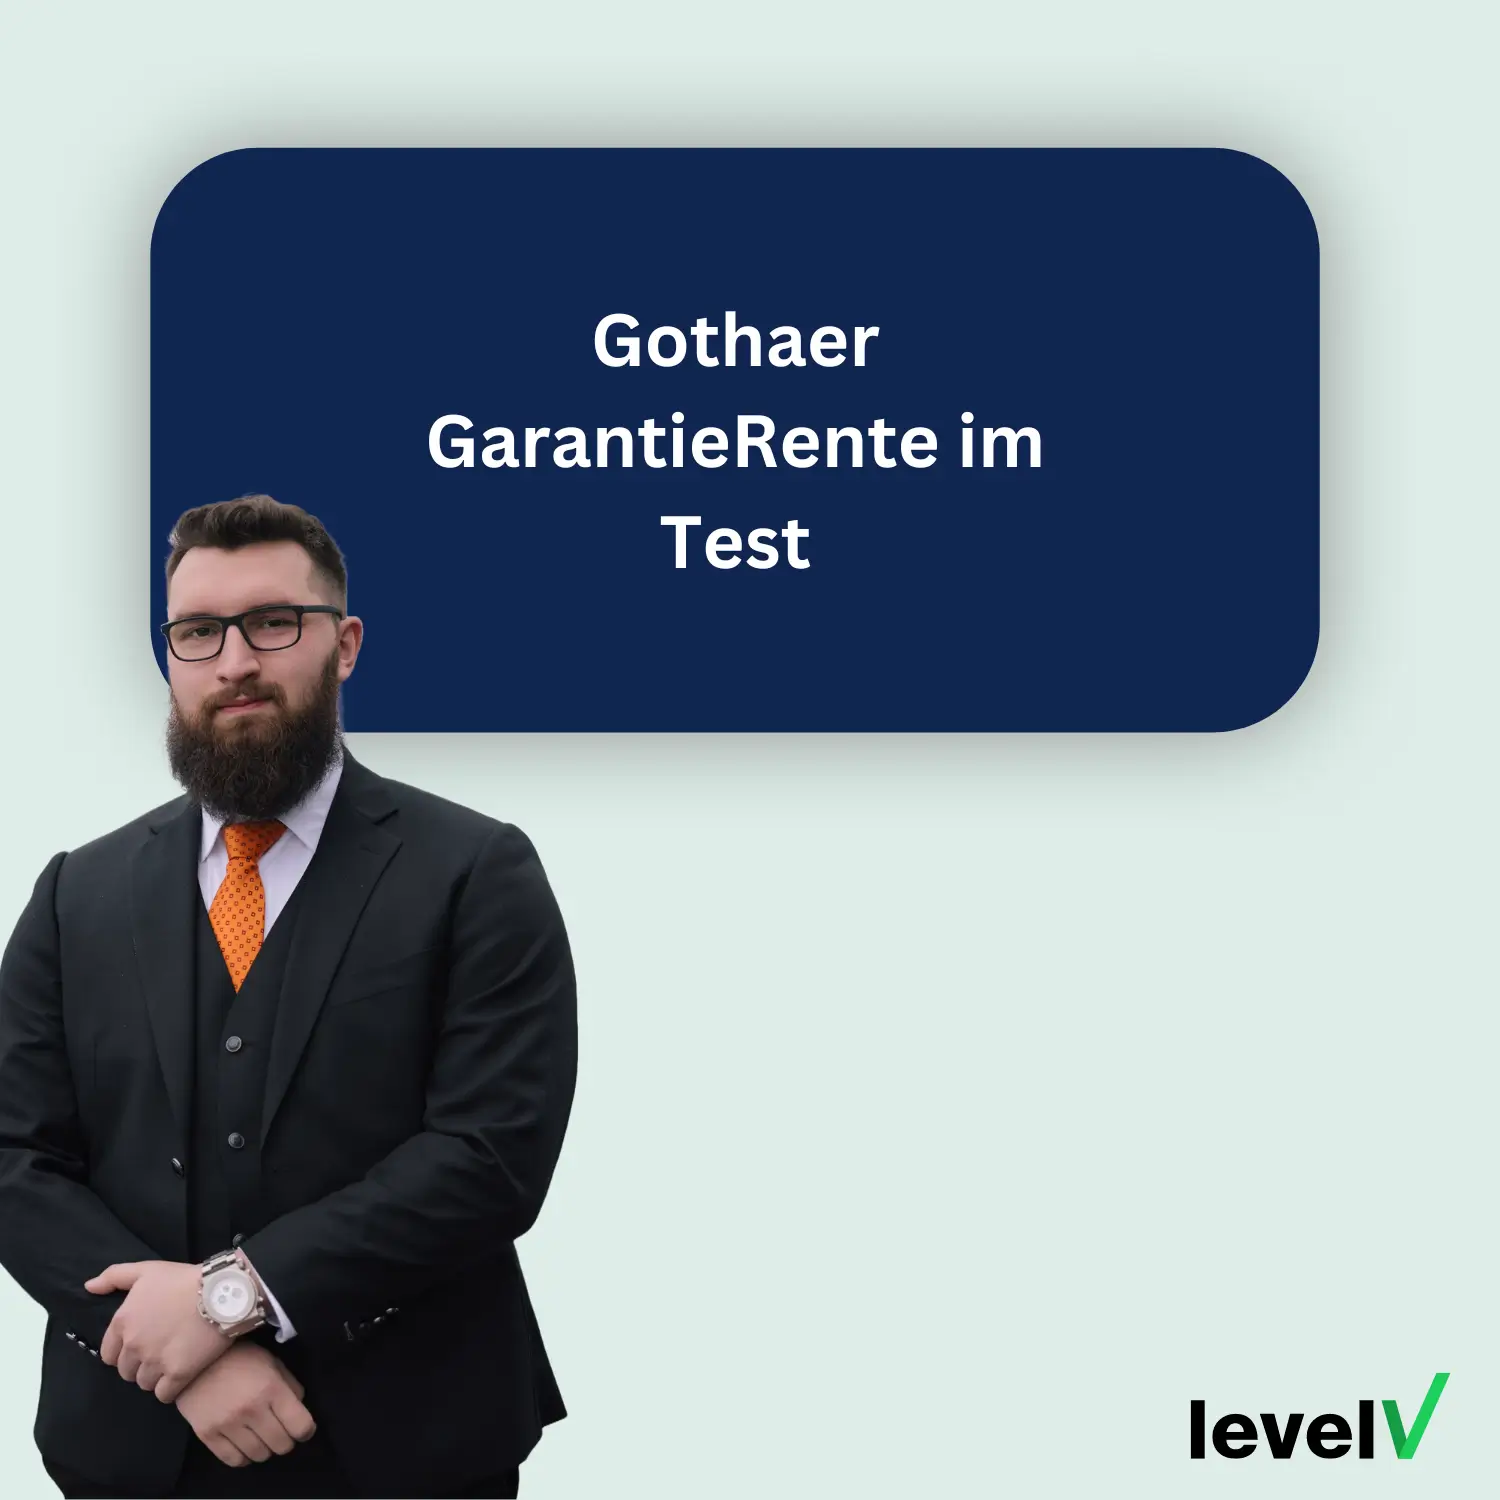 Gothaer GarantieRente im Test